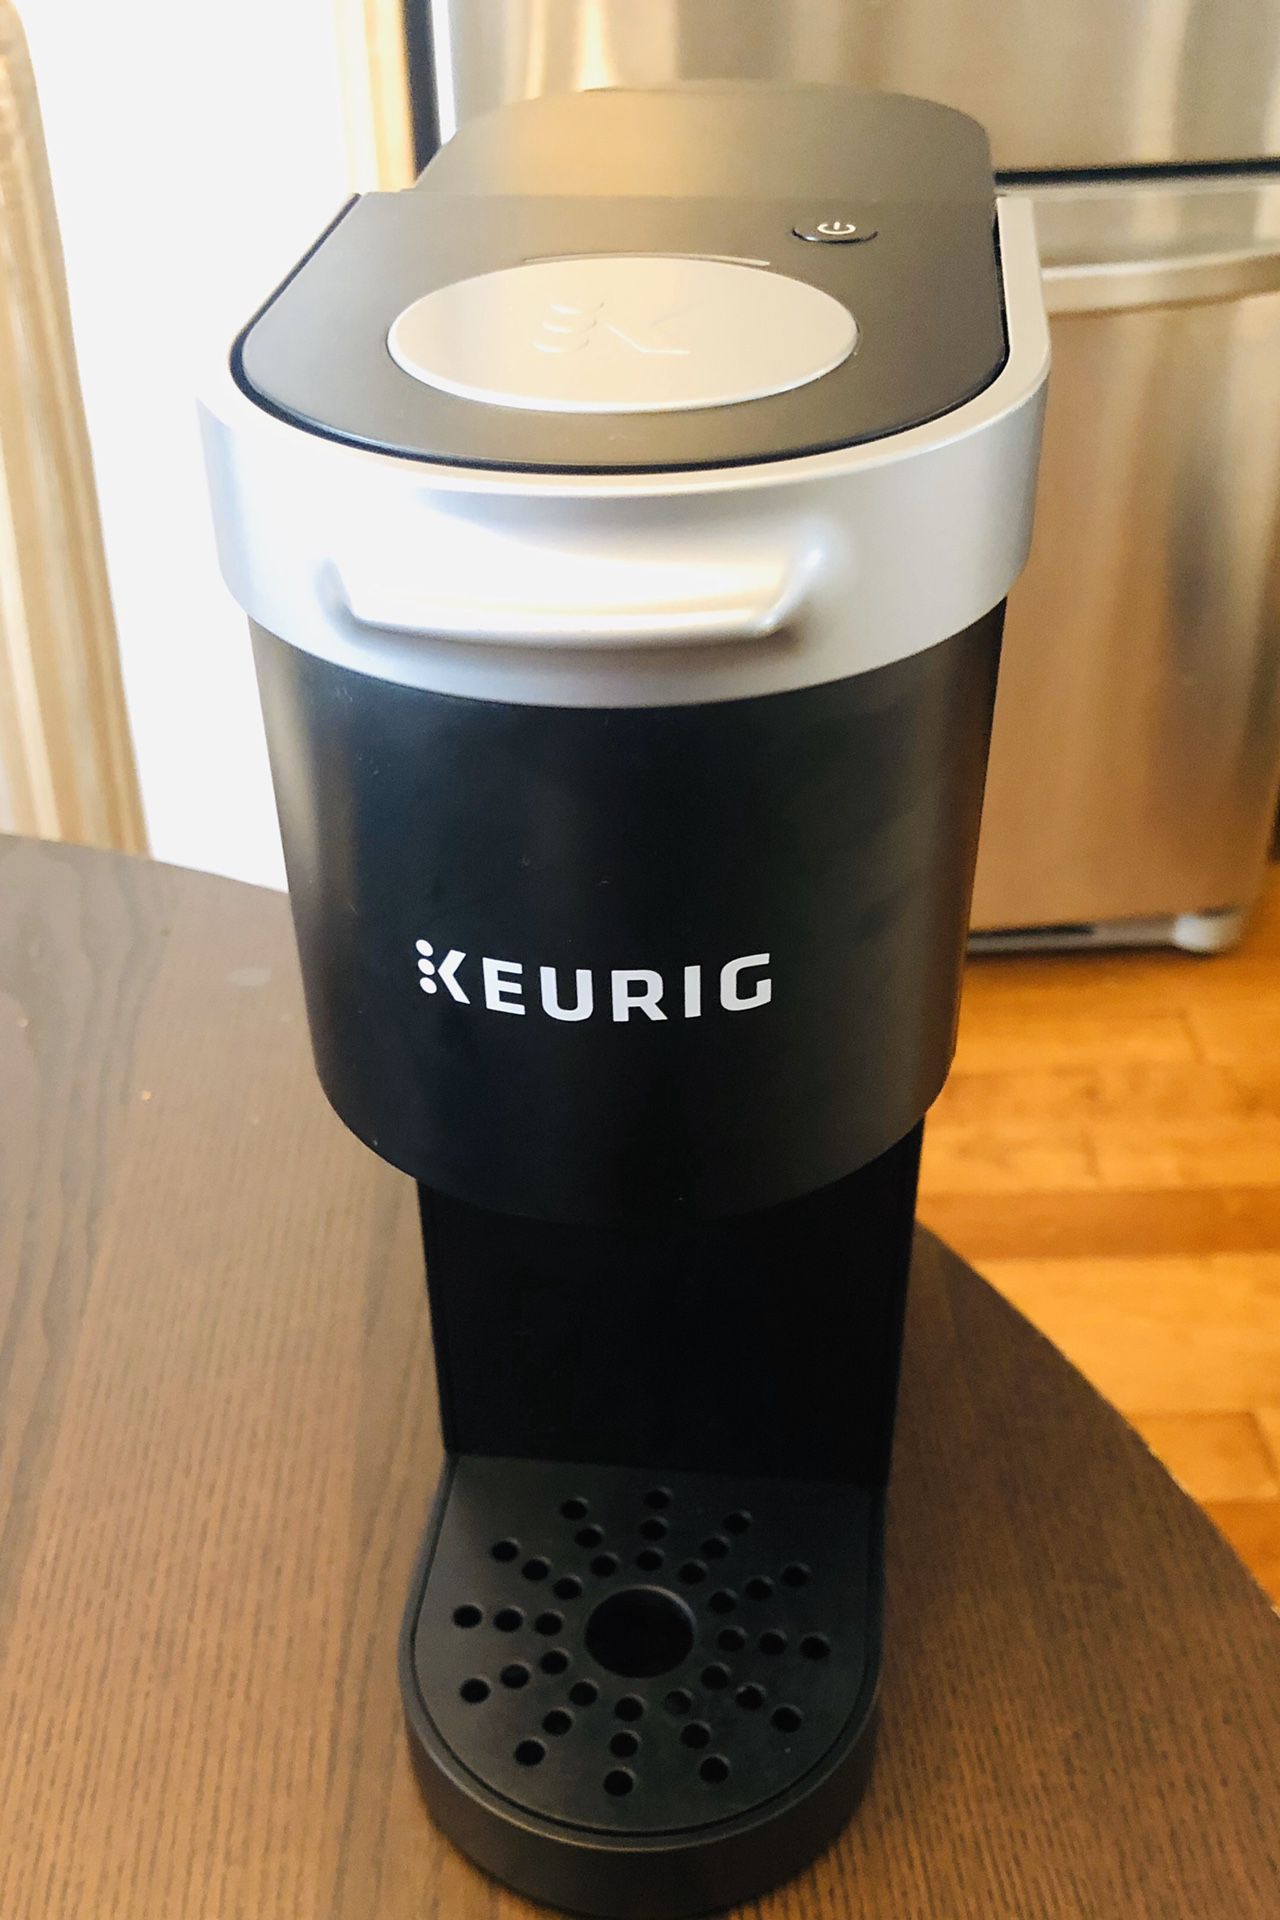 Keurig Single Cup Coffee Maker $25.00